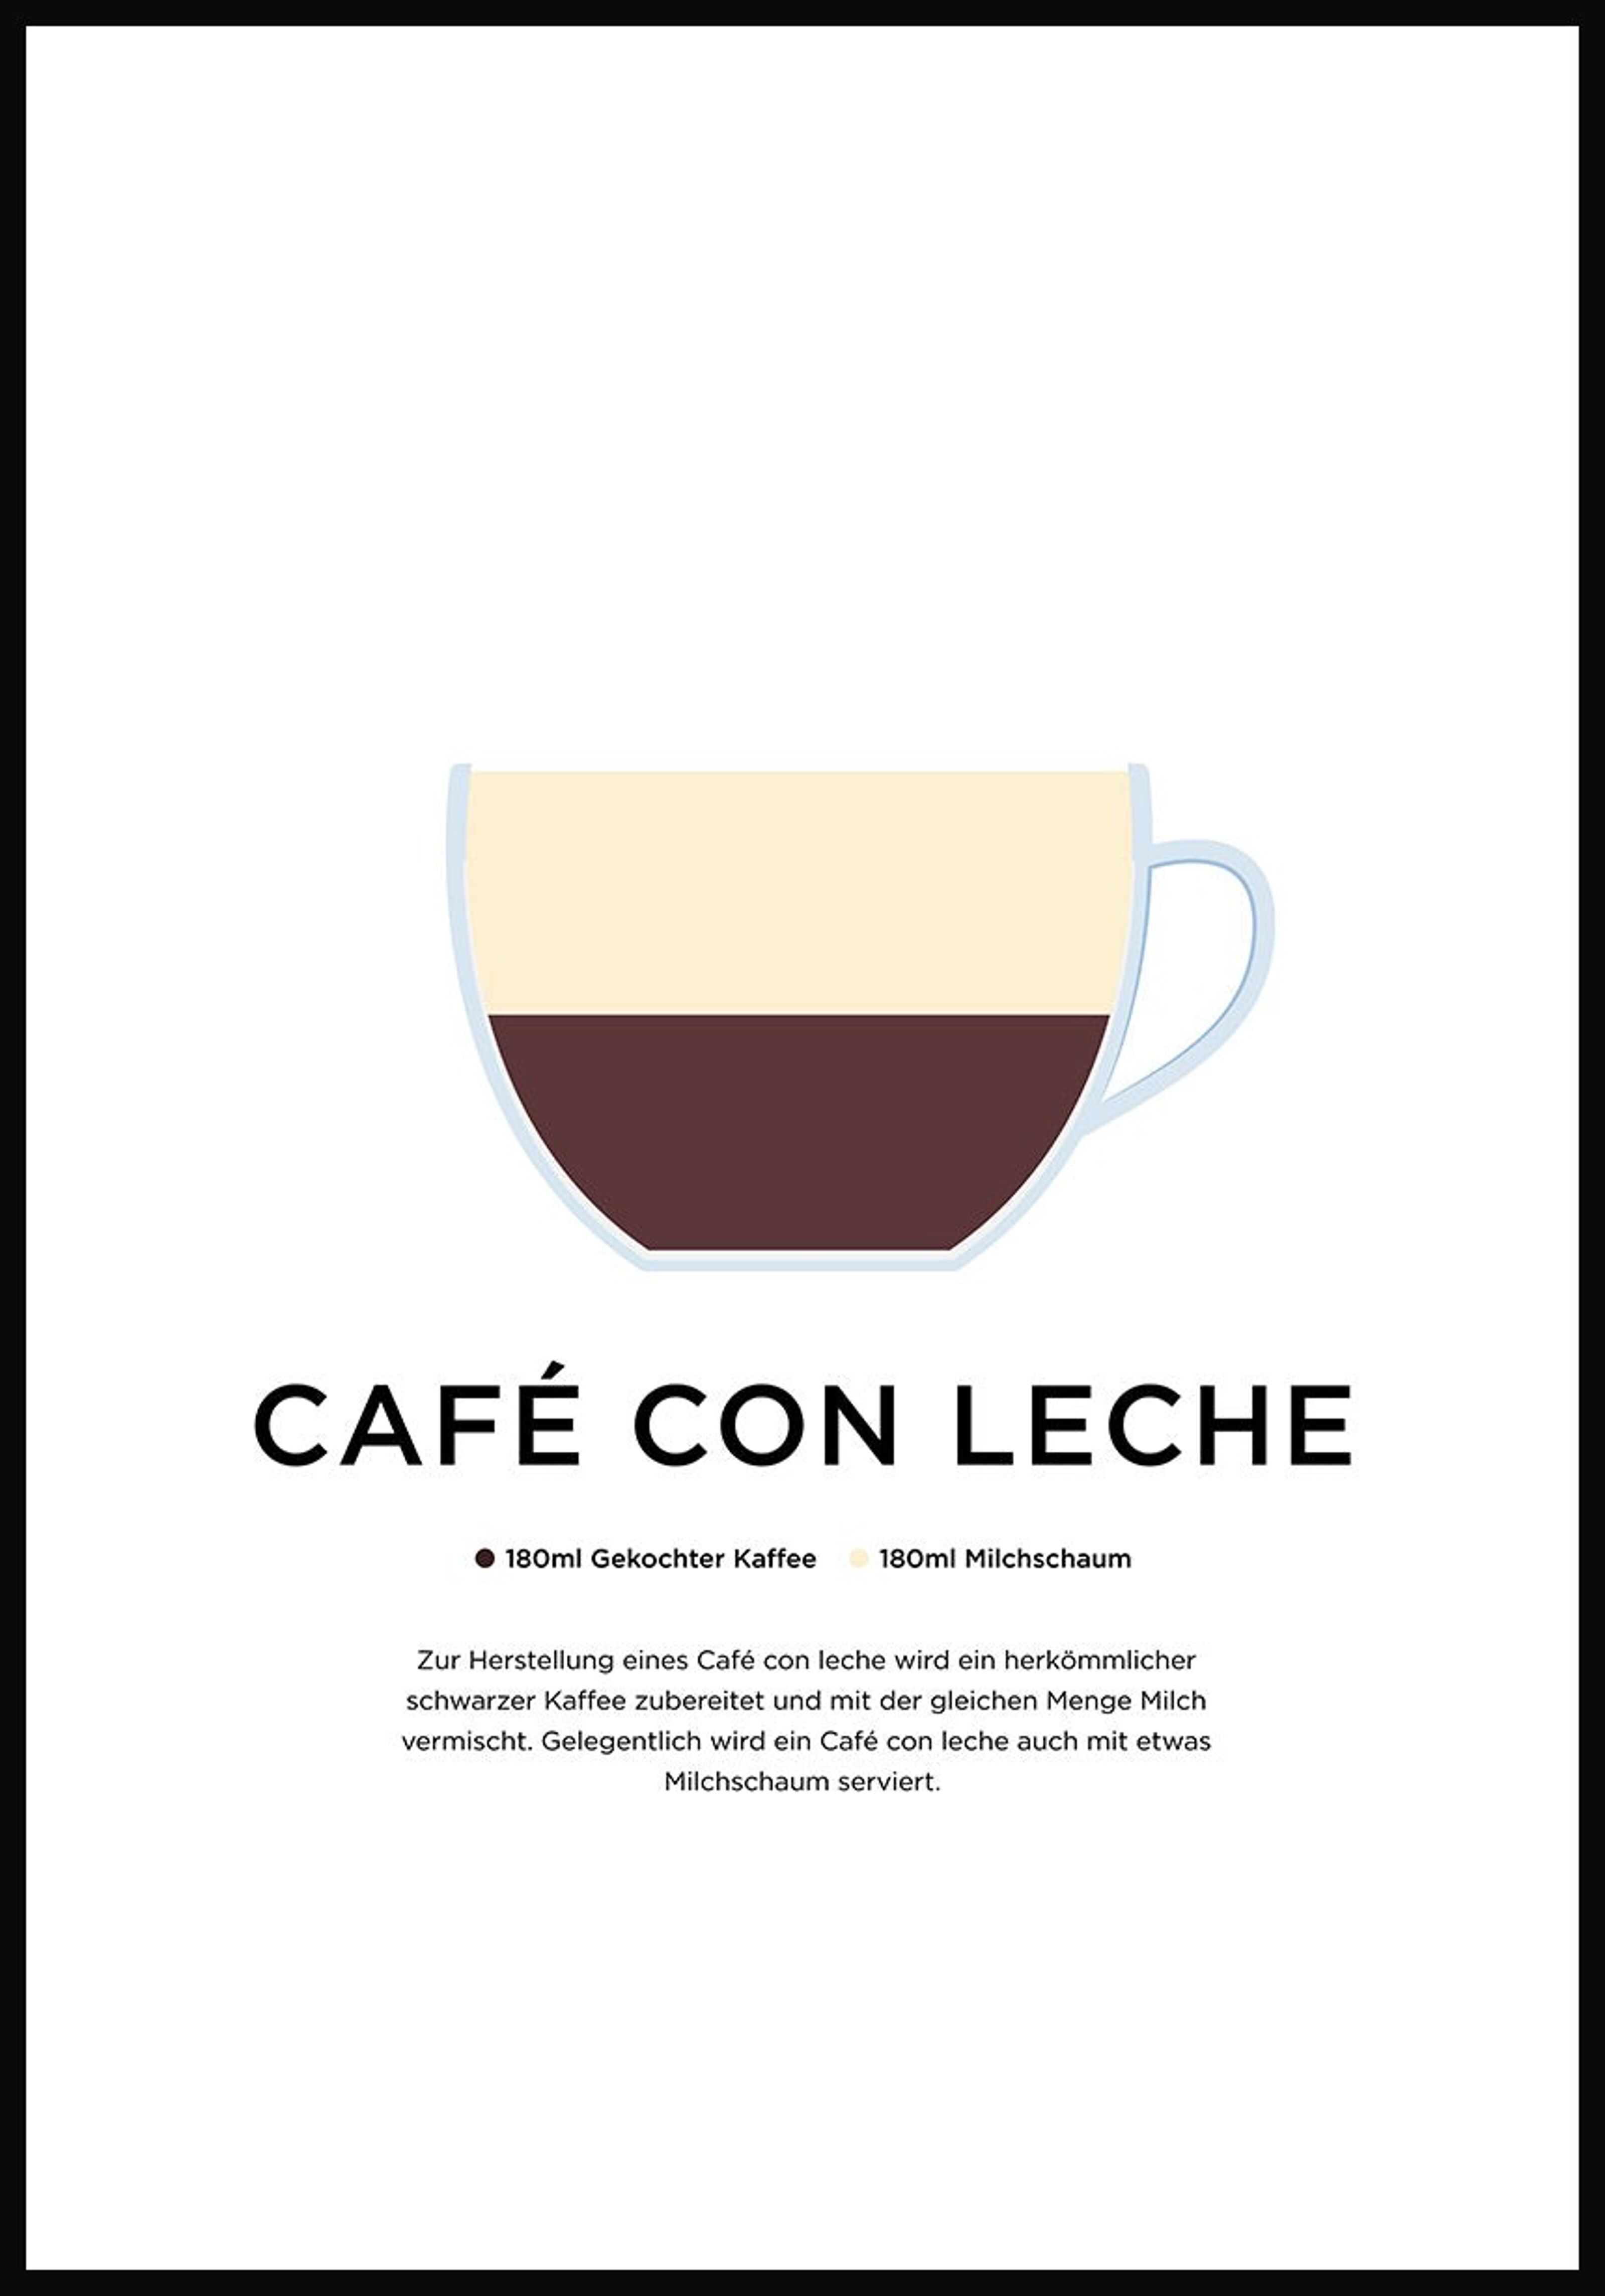 Buy wholesale Café con leche poster with preparation (German) - 40 x 50 cm